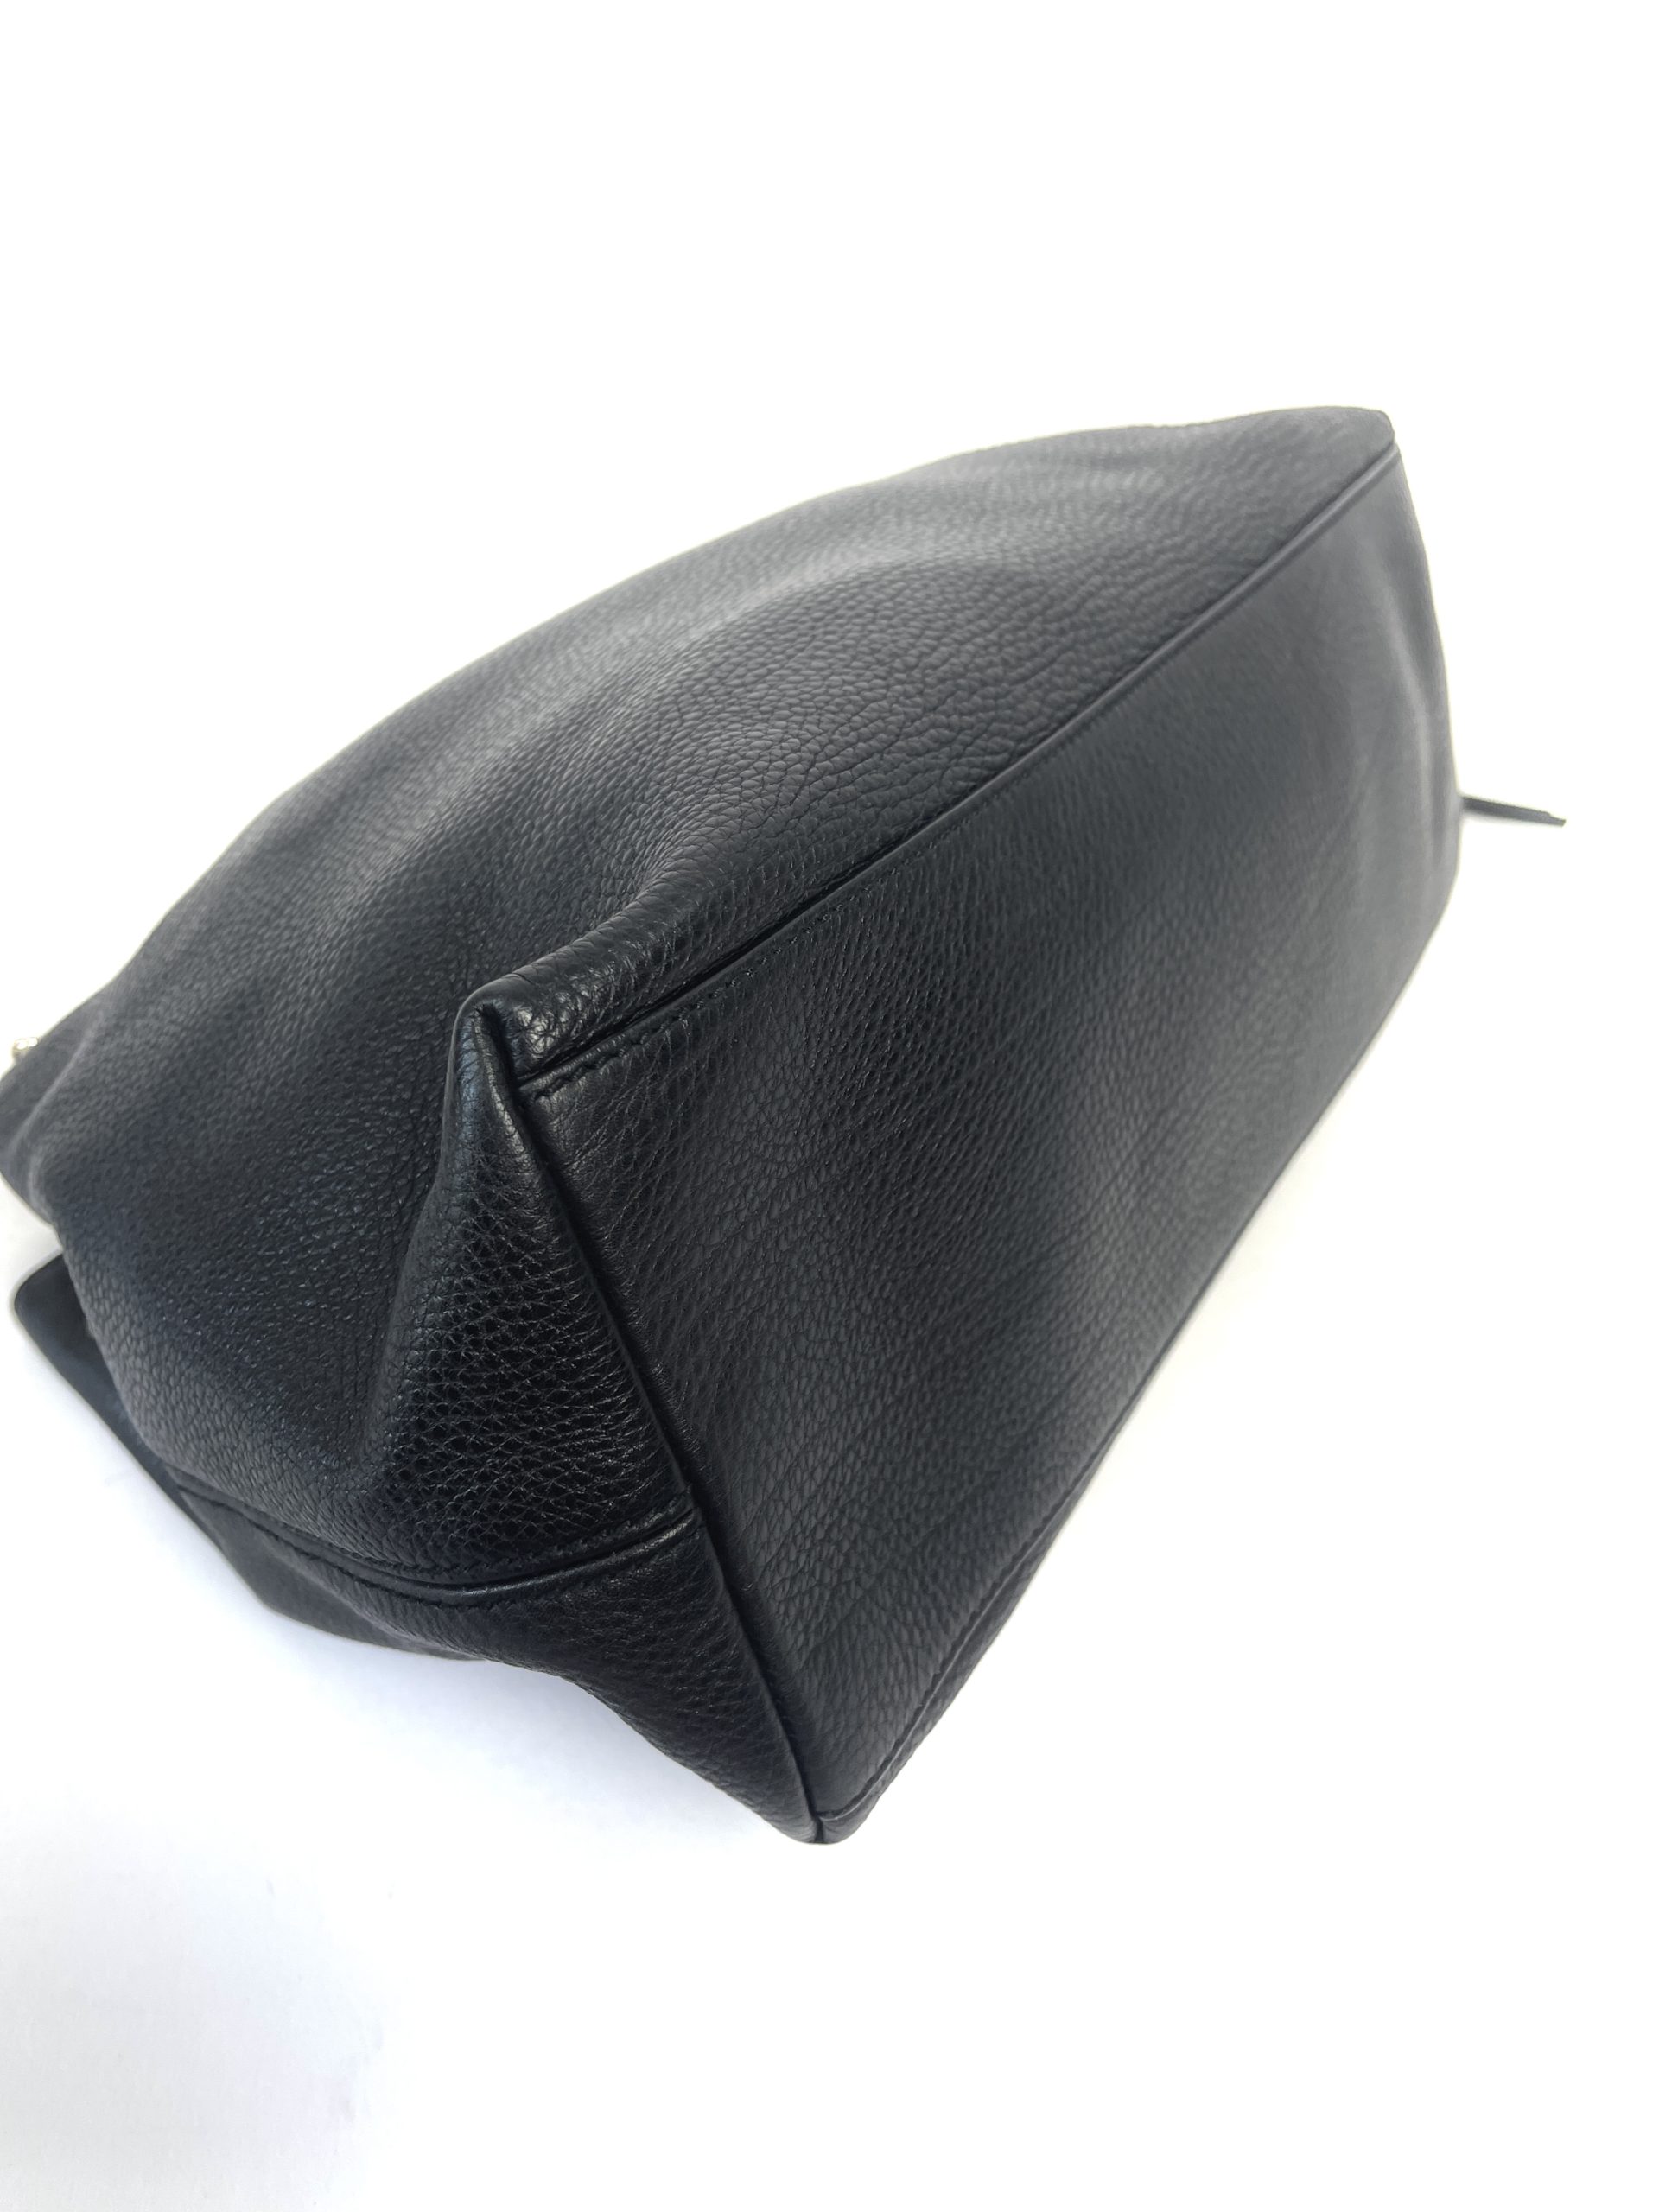 GUCCI Pebbled Calfskin Large Soho Chain Shoulder Bag Black 1218131